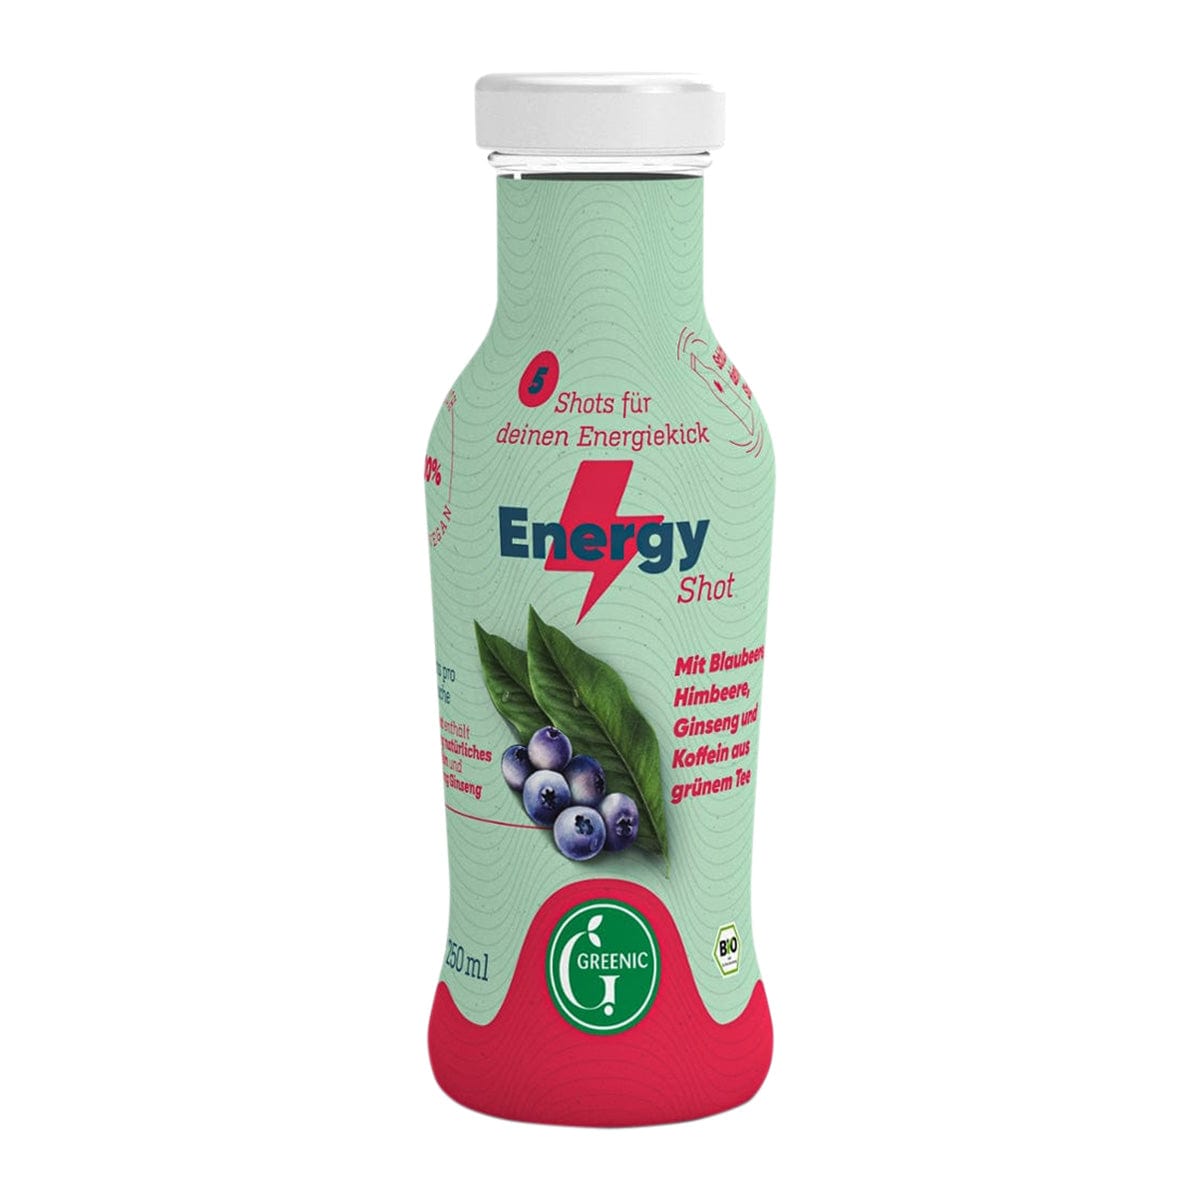 Greenic Bio Energy Shot mit Blaubeere, Himbeere, rotem Ginseng und natürlichem Koffein aus grünem Tee, 250ml